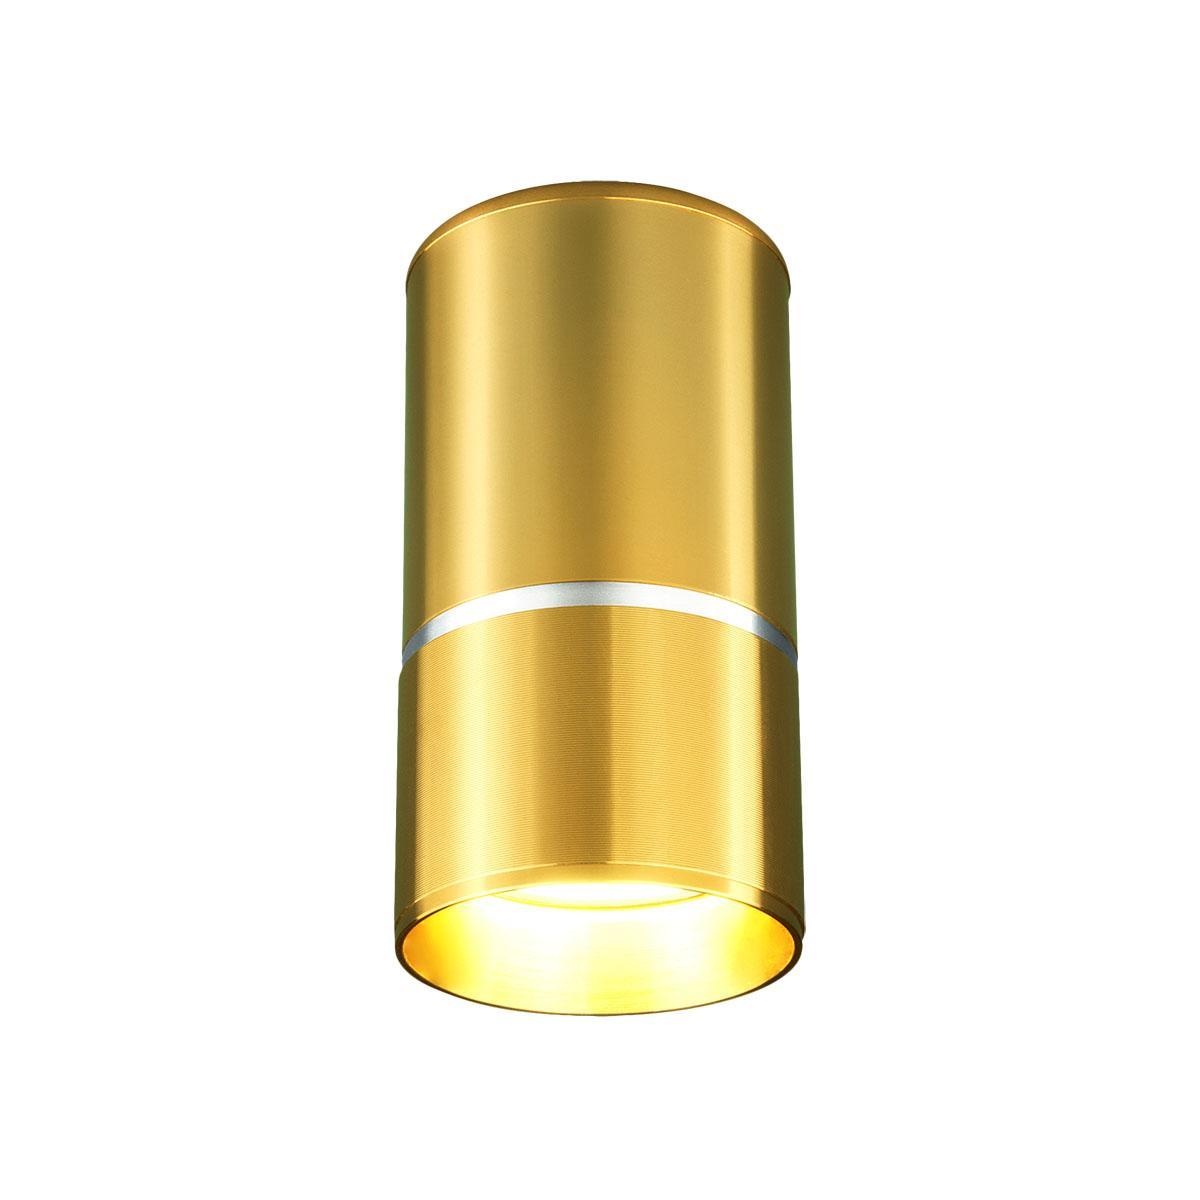 Потолочный светильник Elektrostandard DLN106 GU10 золото 4690389148613 держатель потолочный алюминий золото антик 2 8 см